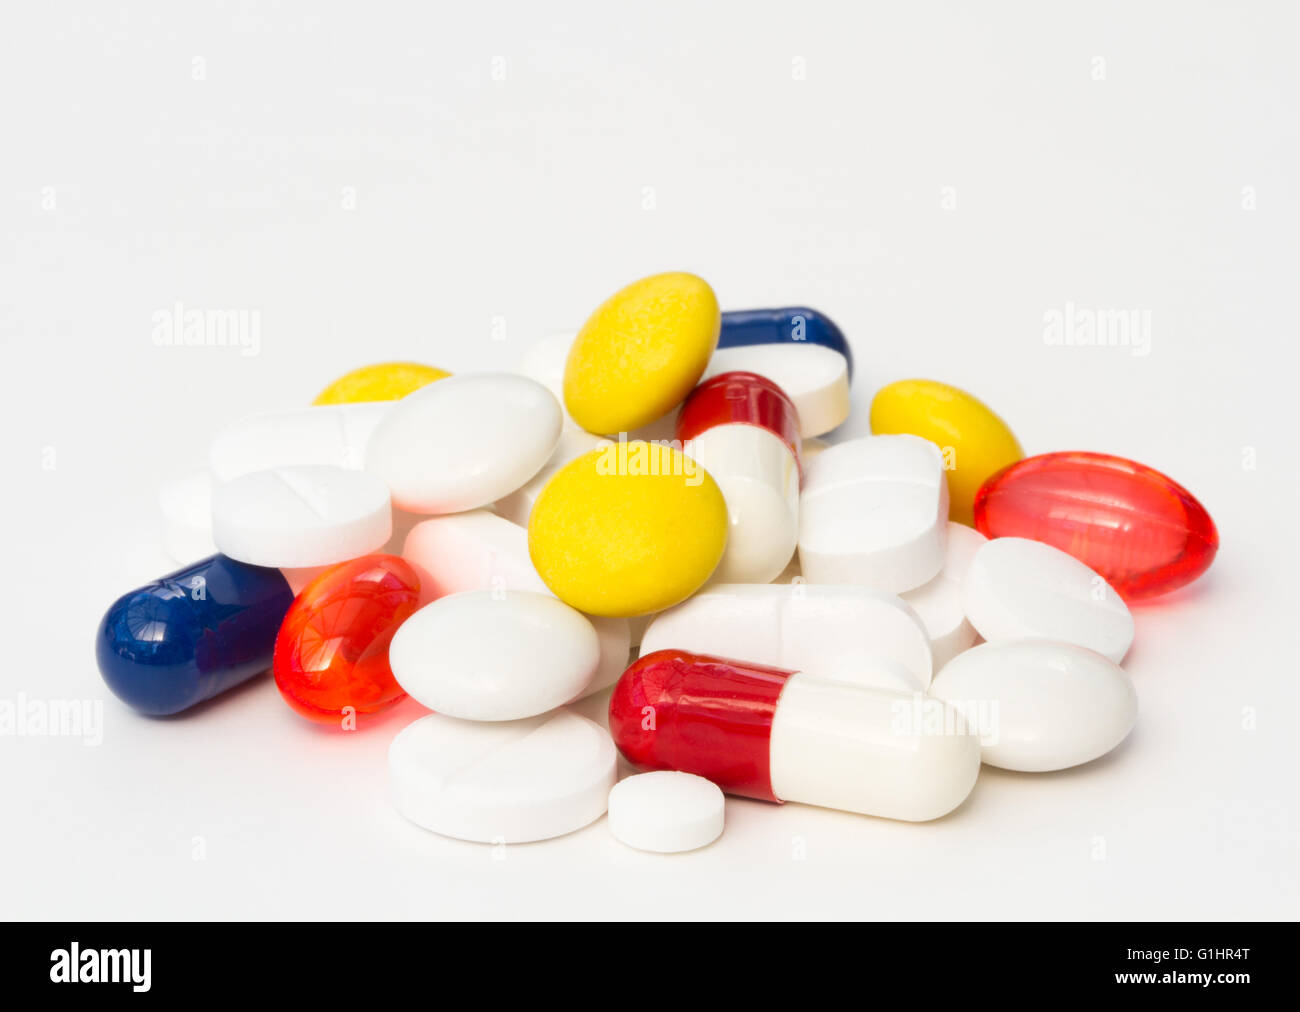 Ein Haufen von verschiedenen, bunten und abwechslungsreichen Pillen, Tabletten und Drogen auf einem weißen Hintergrund. Stockfoto